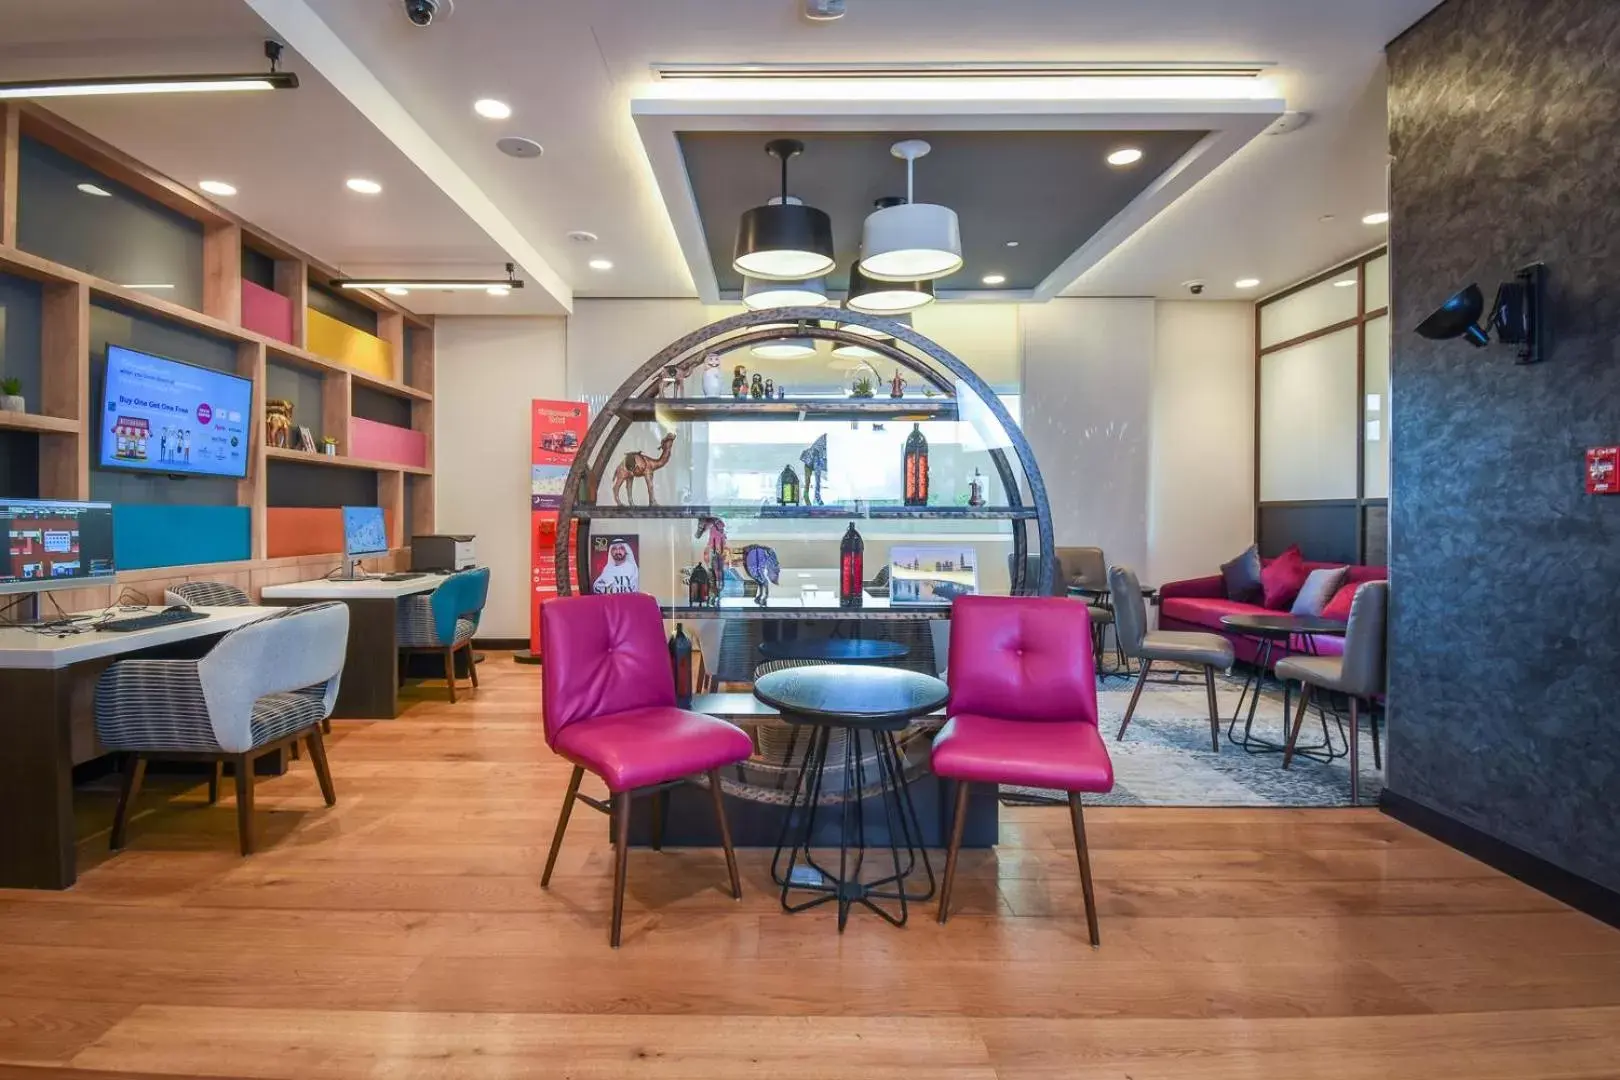 Lobby or reception, Restaurant/Places to Eat in Premier Inn Dubai Al Jaddaf